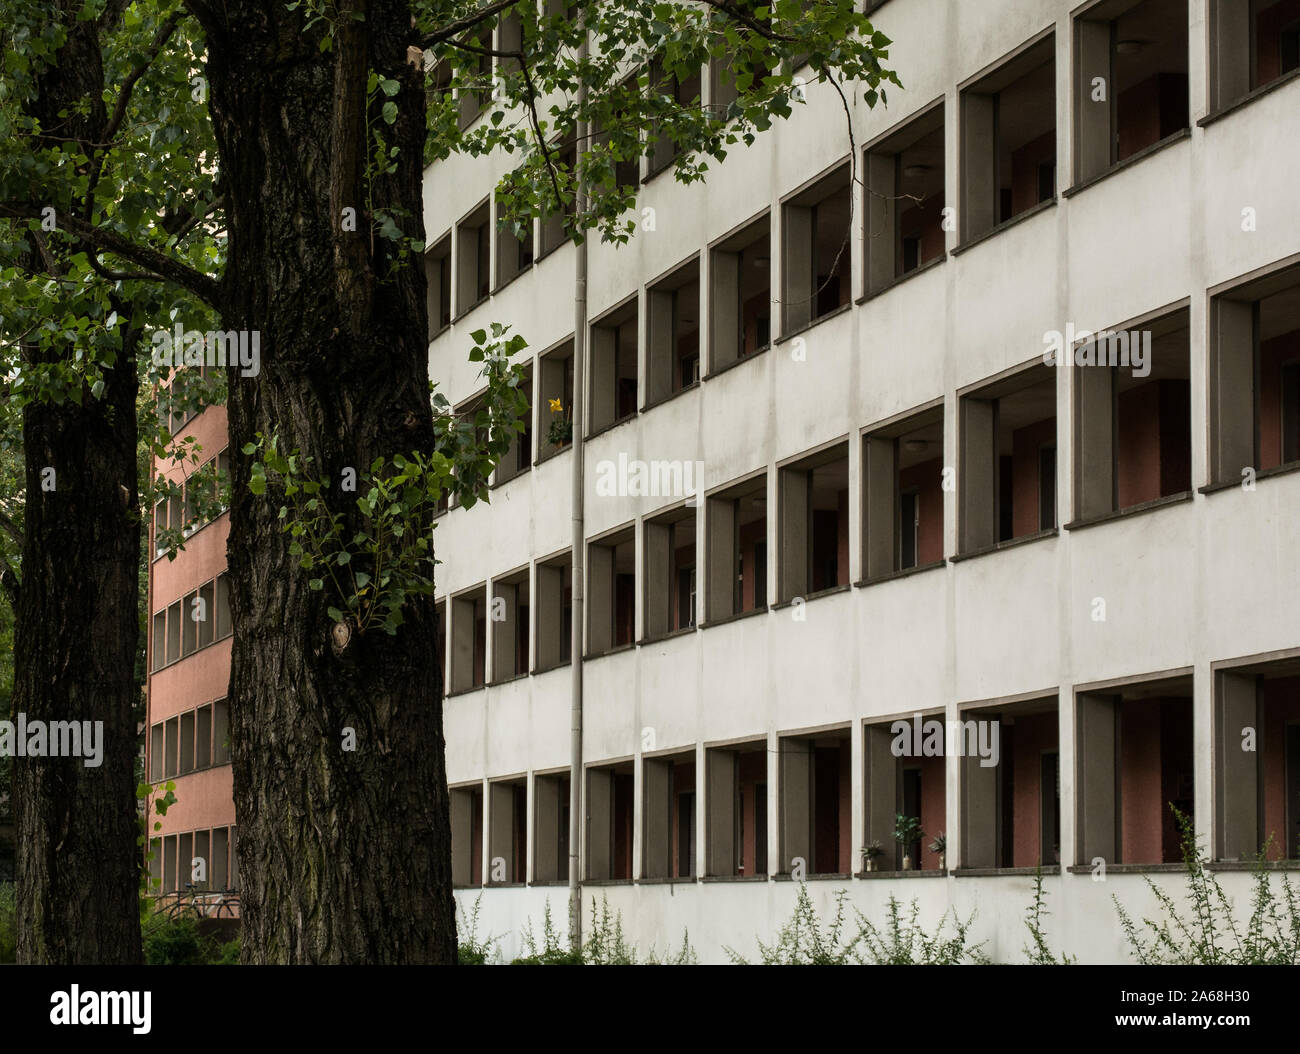 Alte sozialistische Architektur von Pergola House (laubenganghaus) in Friedrichshain, Berlin, Deutschland, lange Korridore die Apartments außerhalb anschließen Stockfoto